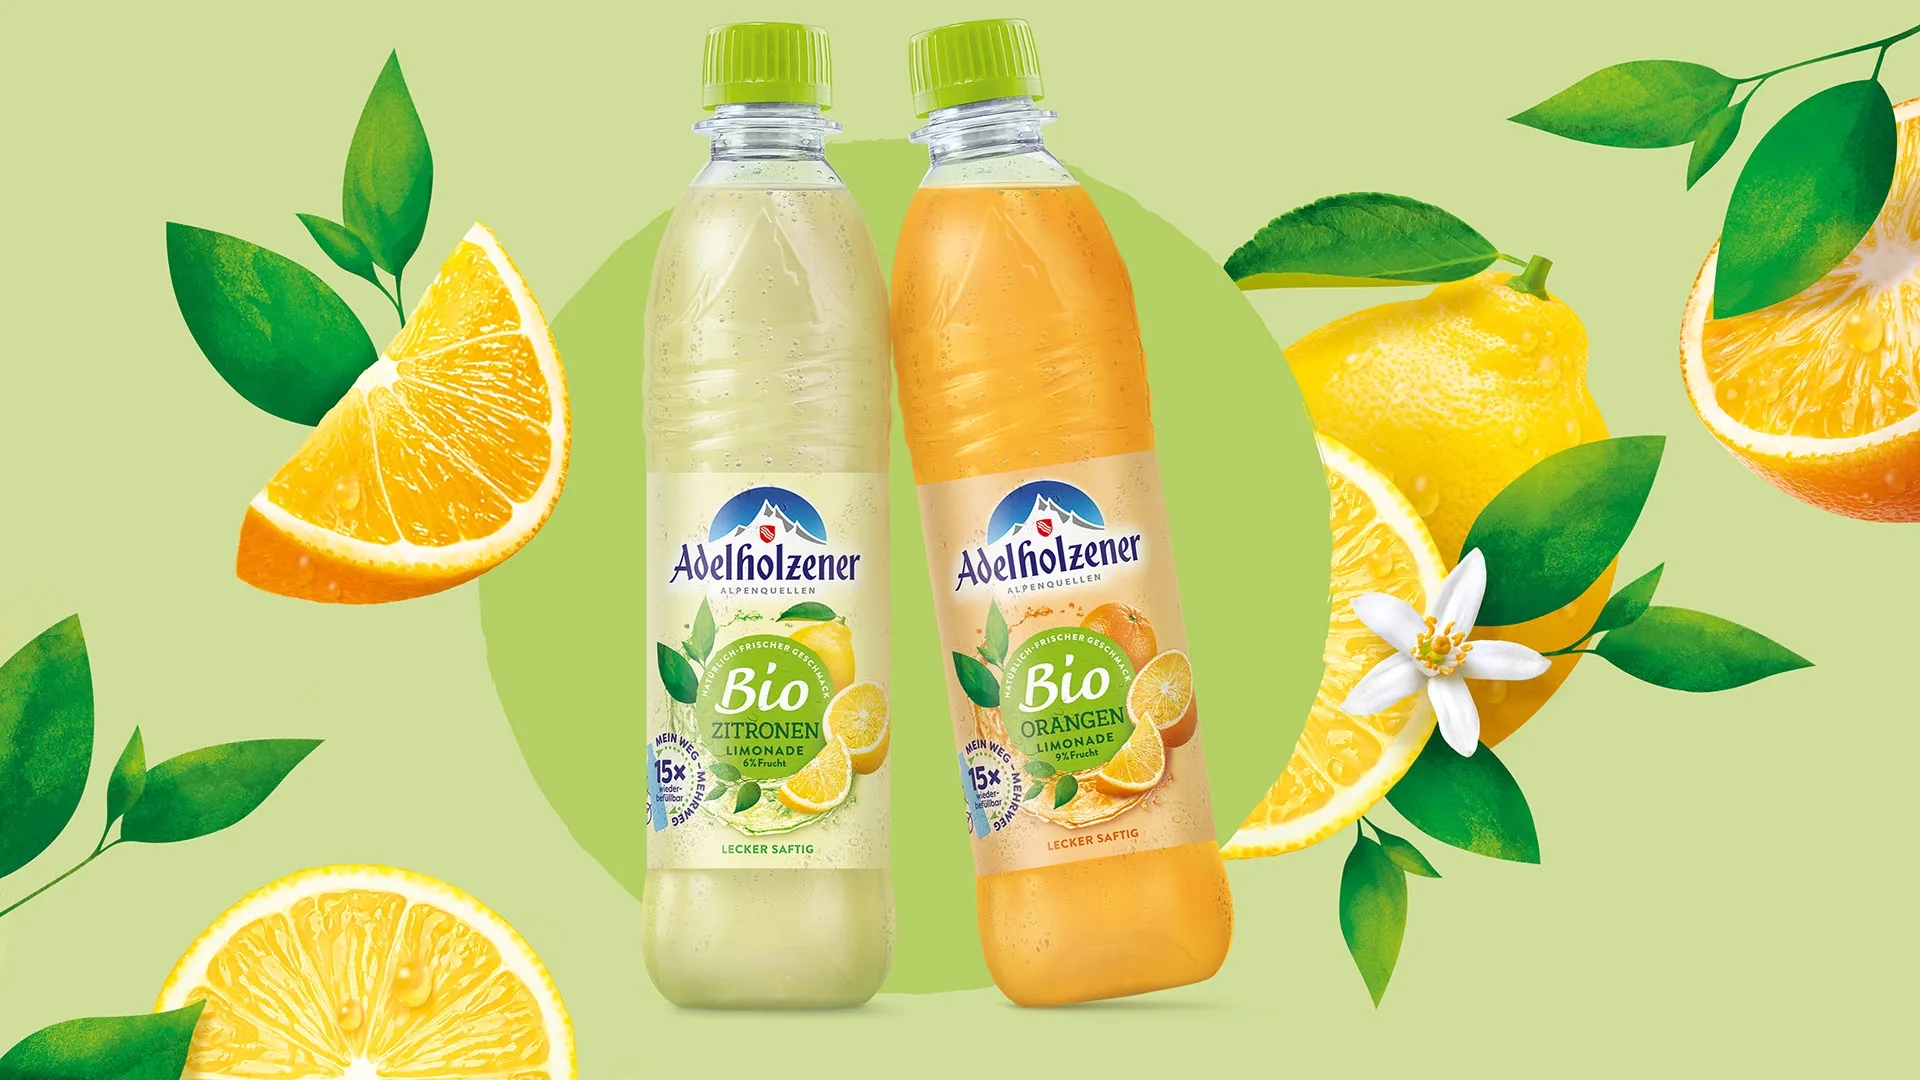 adelholzener-packaging-design-bio-lemonades-hajok.webp.jpg